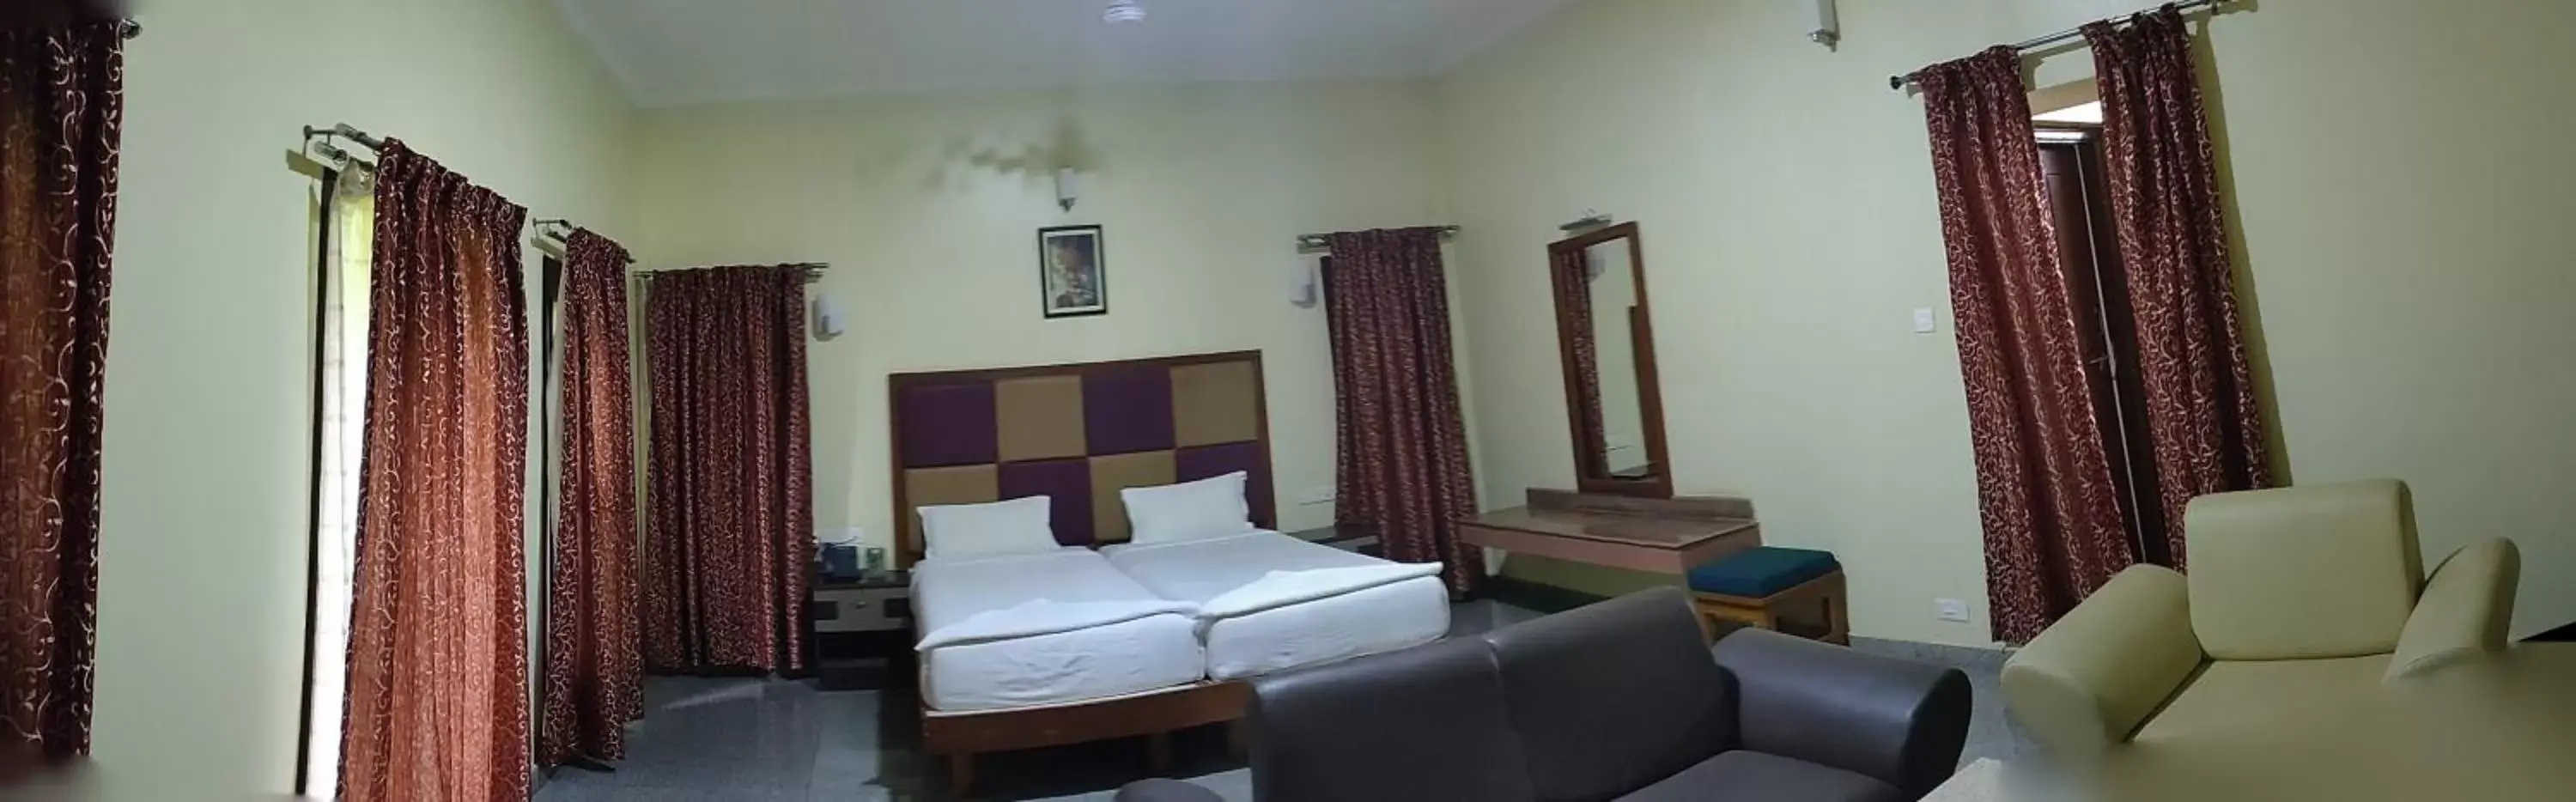 Bedroom, Seating Area in Kanthi Resorts Badami